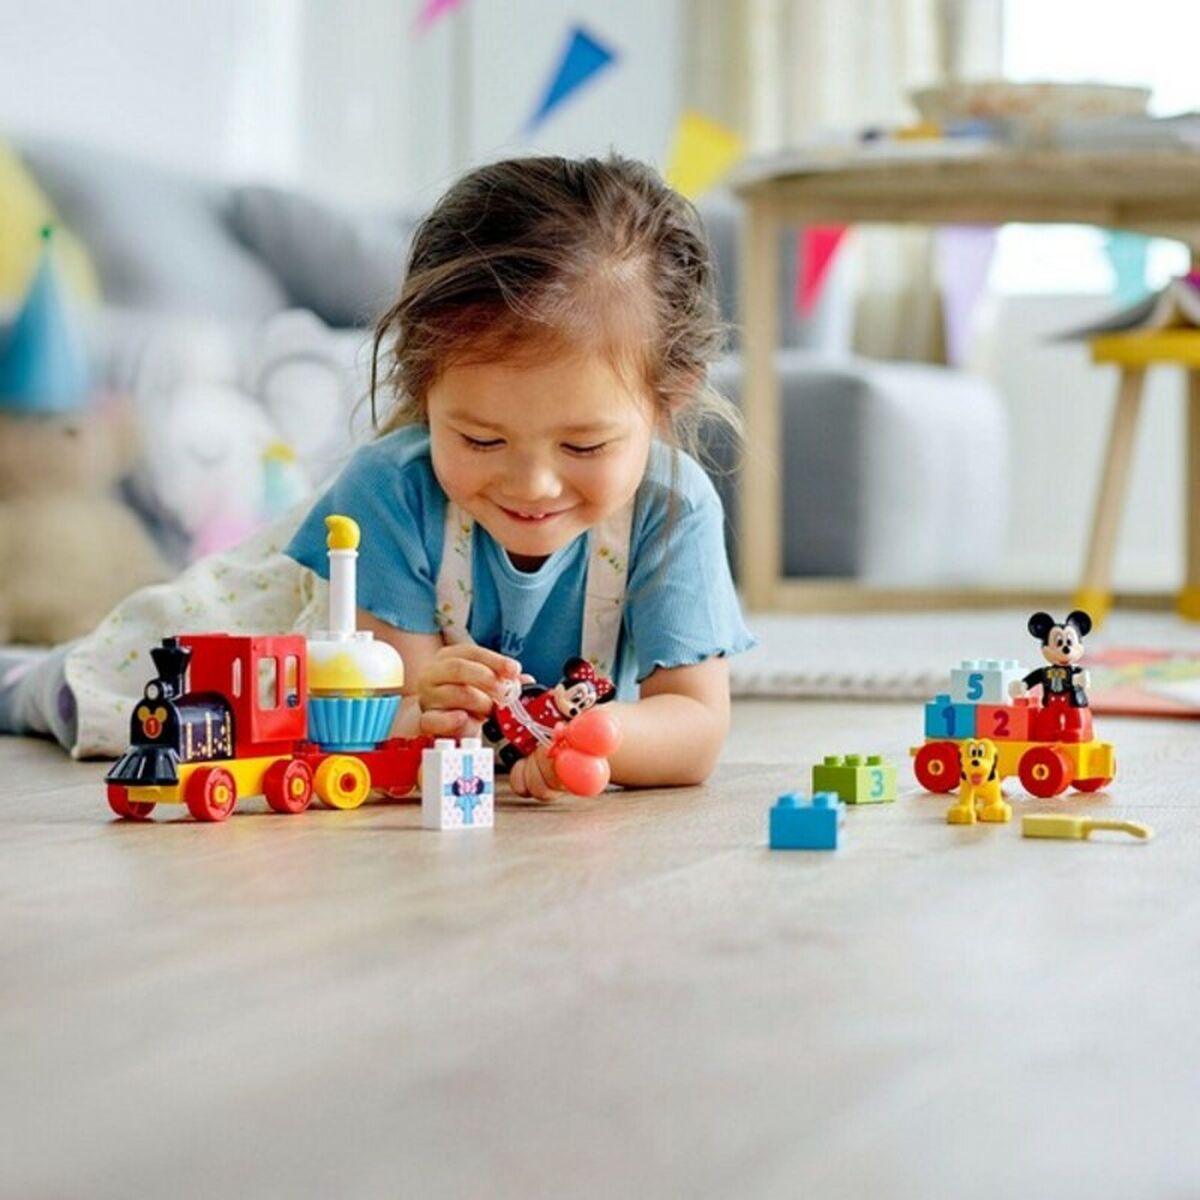 Playset Duplo Mickey and Minnie Birthday Train Lego 10941-Leksaker och spel, Dockor och actionfigurer-Lego-peaceofhome.se